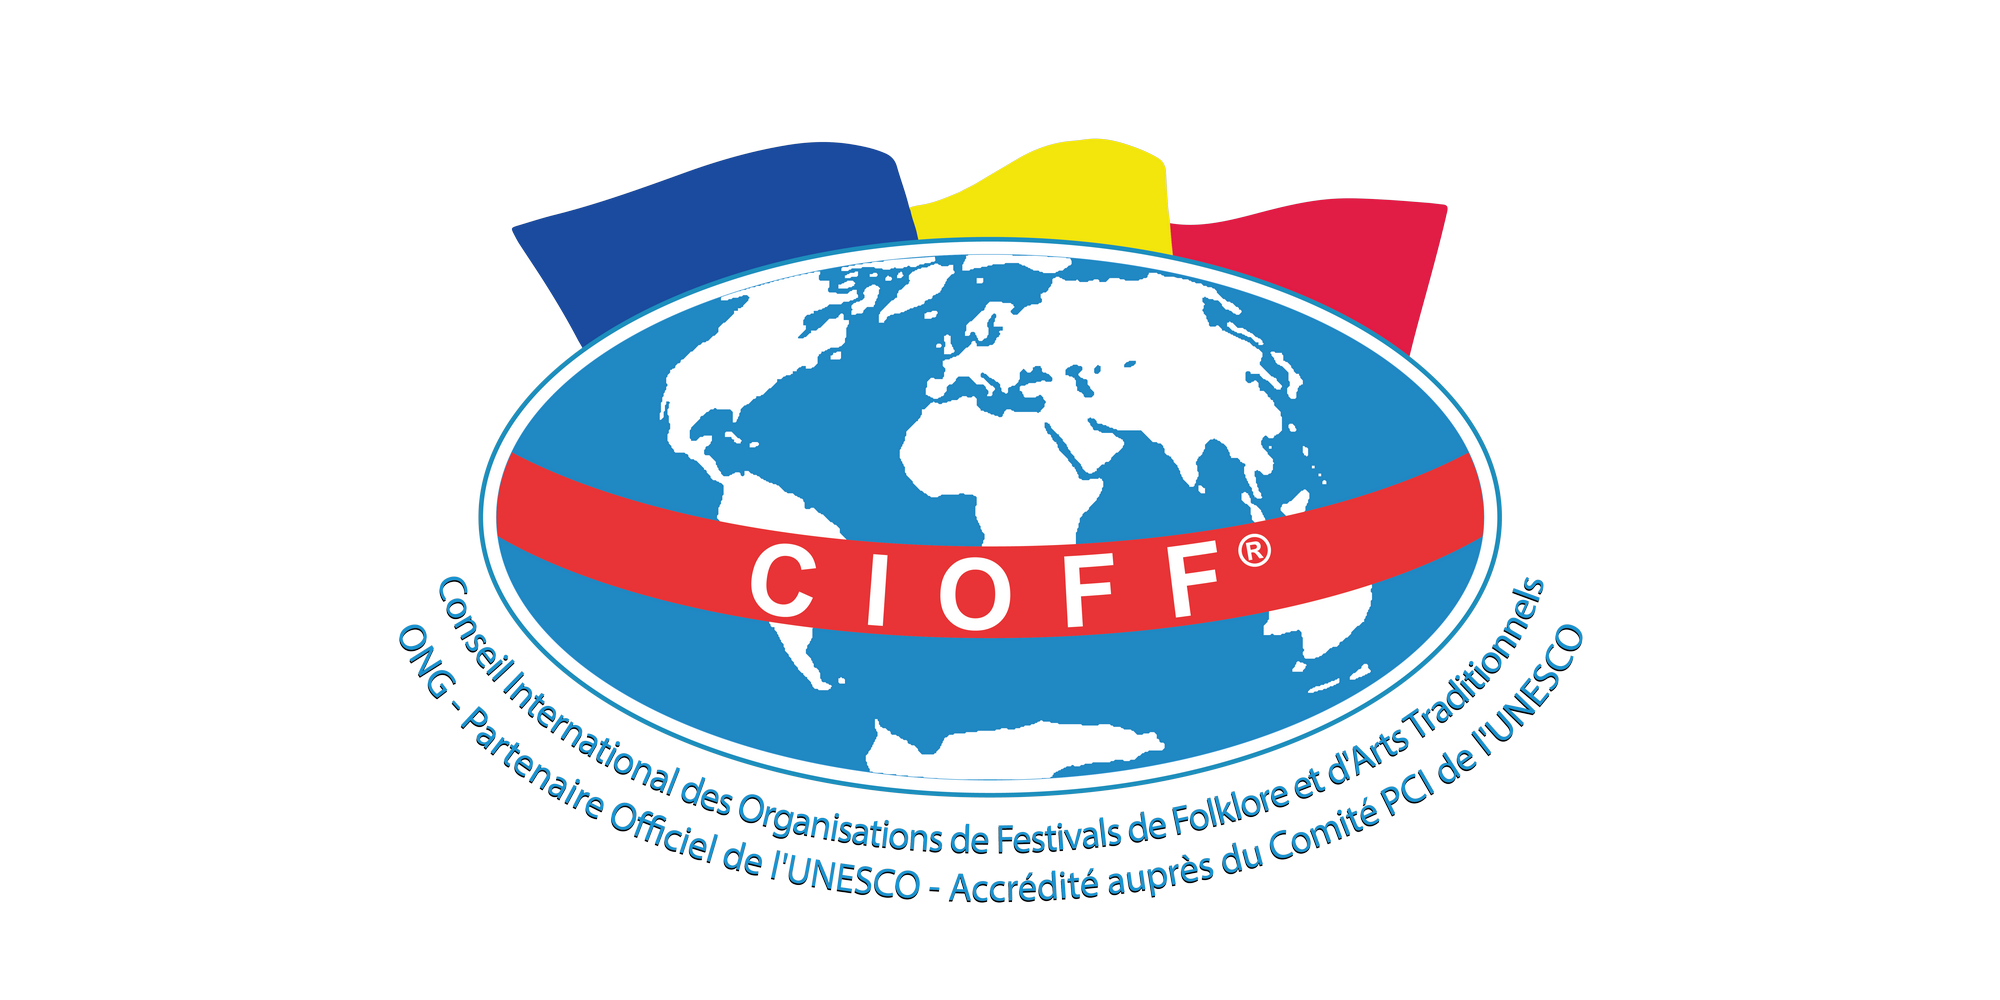 CIOFF - Consiliul Internațional al Organizațiilor de Festivaluri Folclorice și Arte Populare logo